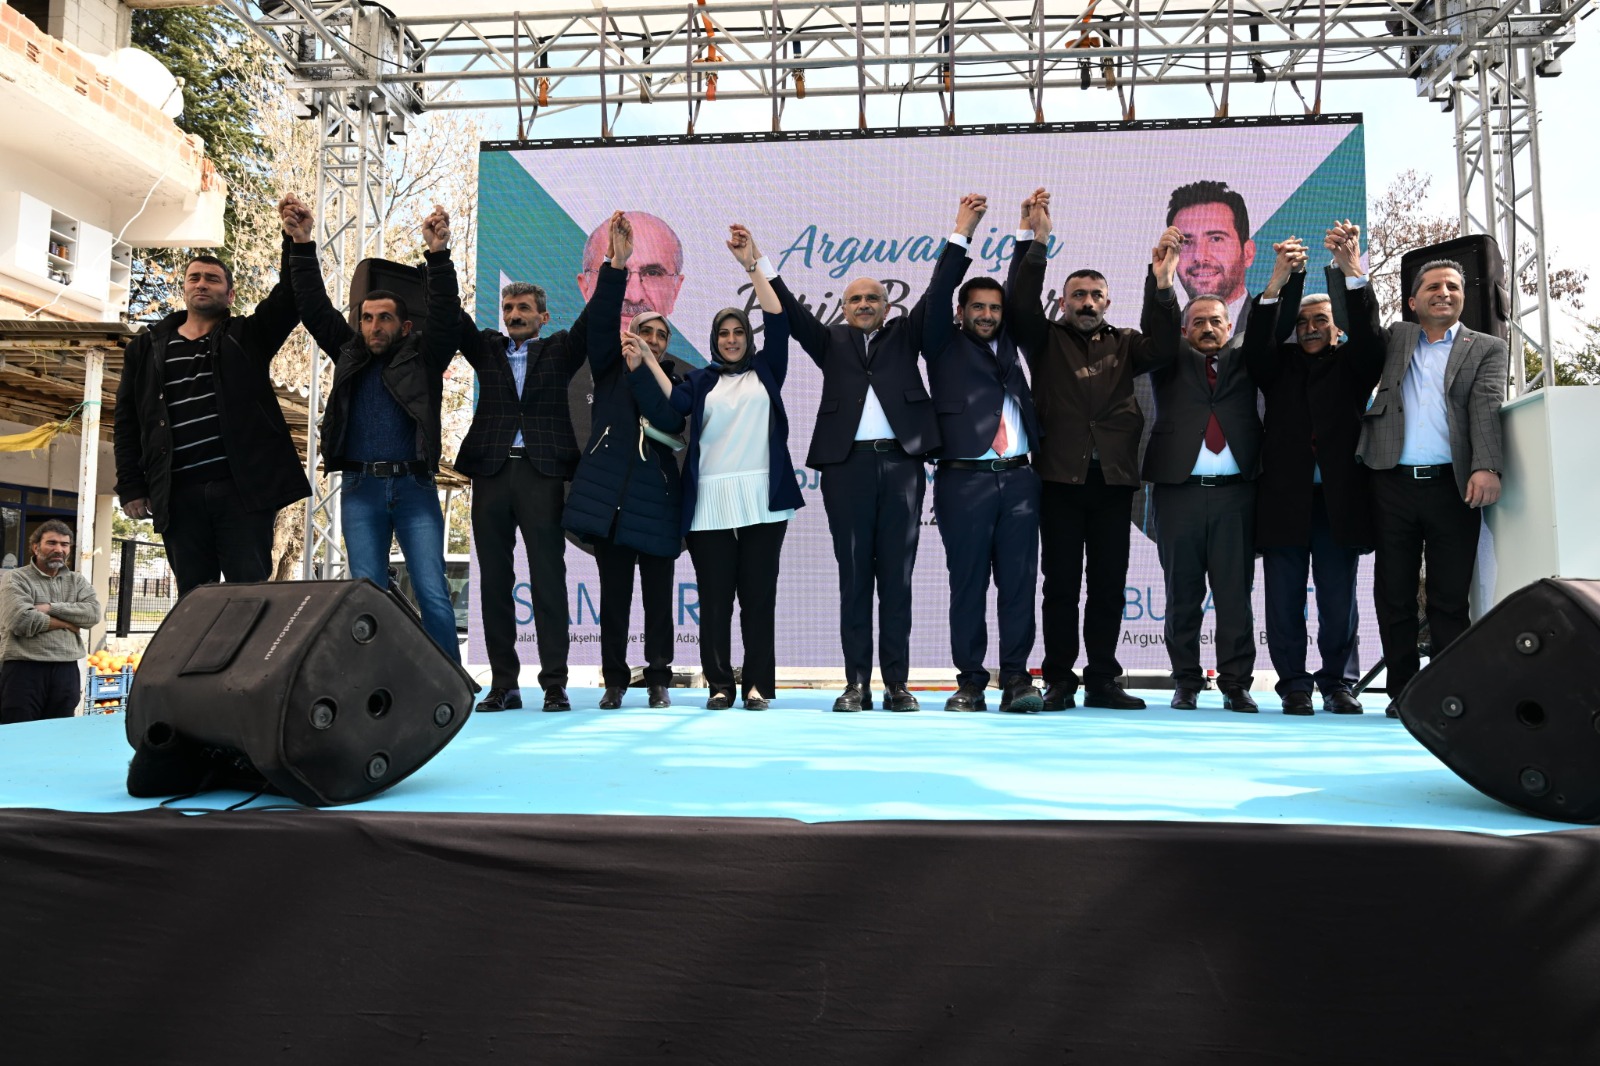 Malatya Büyükşehir Belediye Başkan Adayı Sami Er, Türkü Diyarı Arguvan’daydı